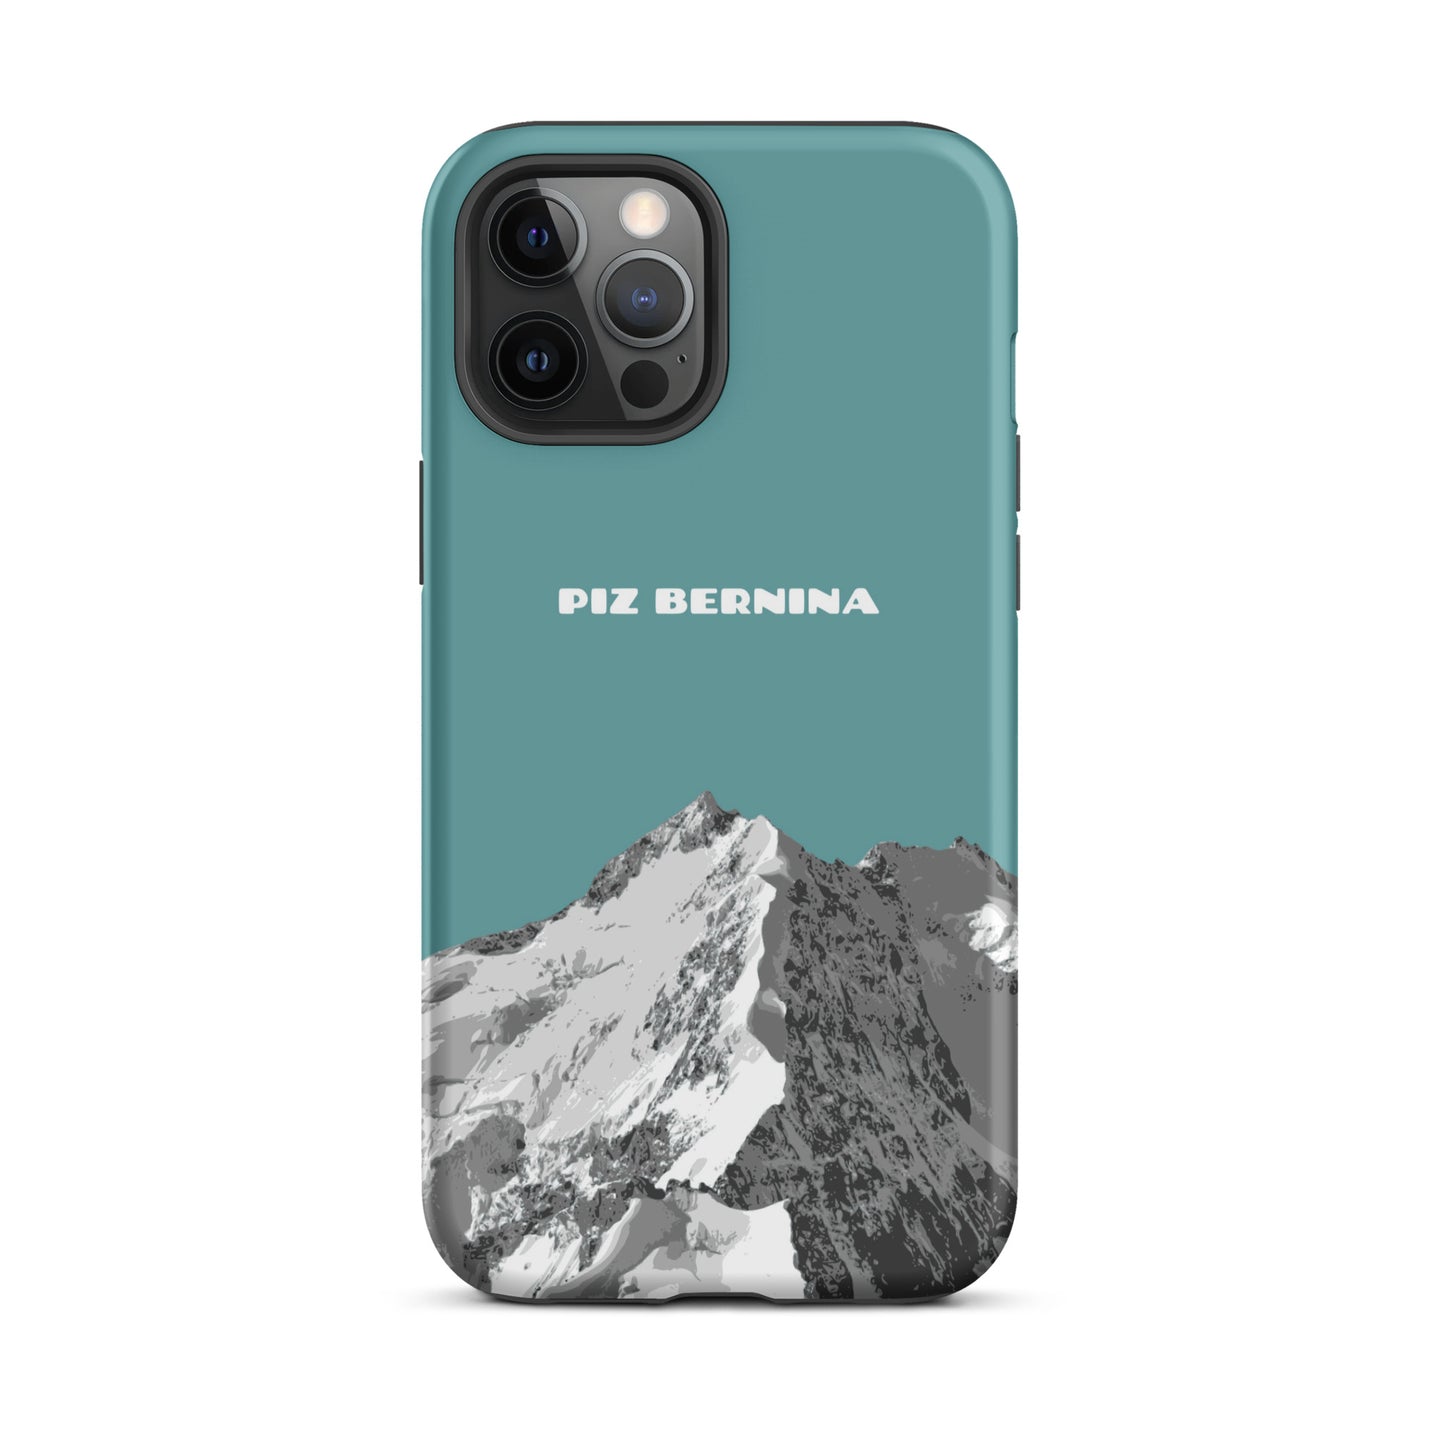 Hülle für das iPhone 12 Pro Max von Apple in der Farbe Kadettenblau, dass den Piz Bernina in Graubünden zeigt.